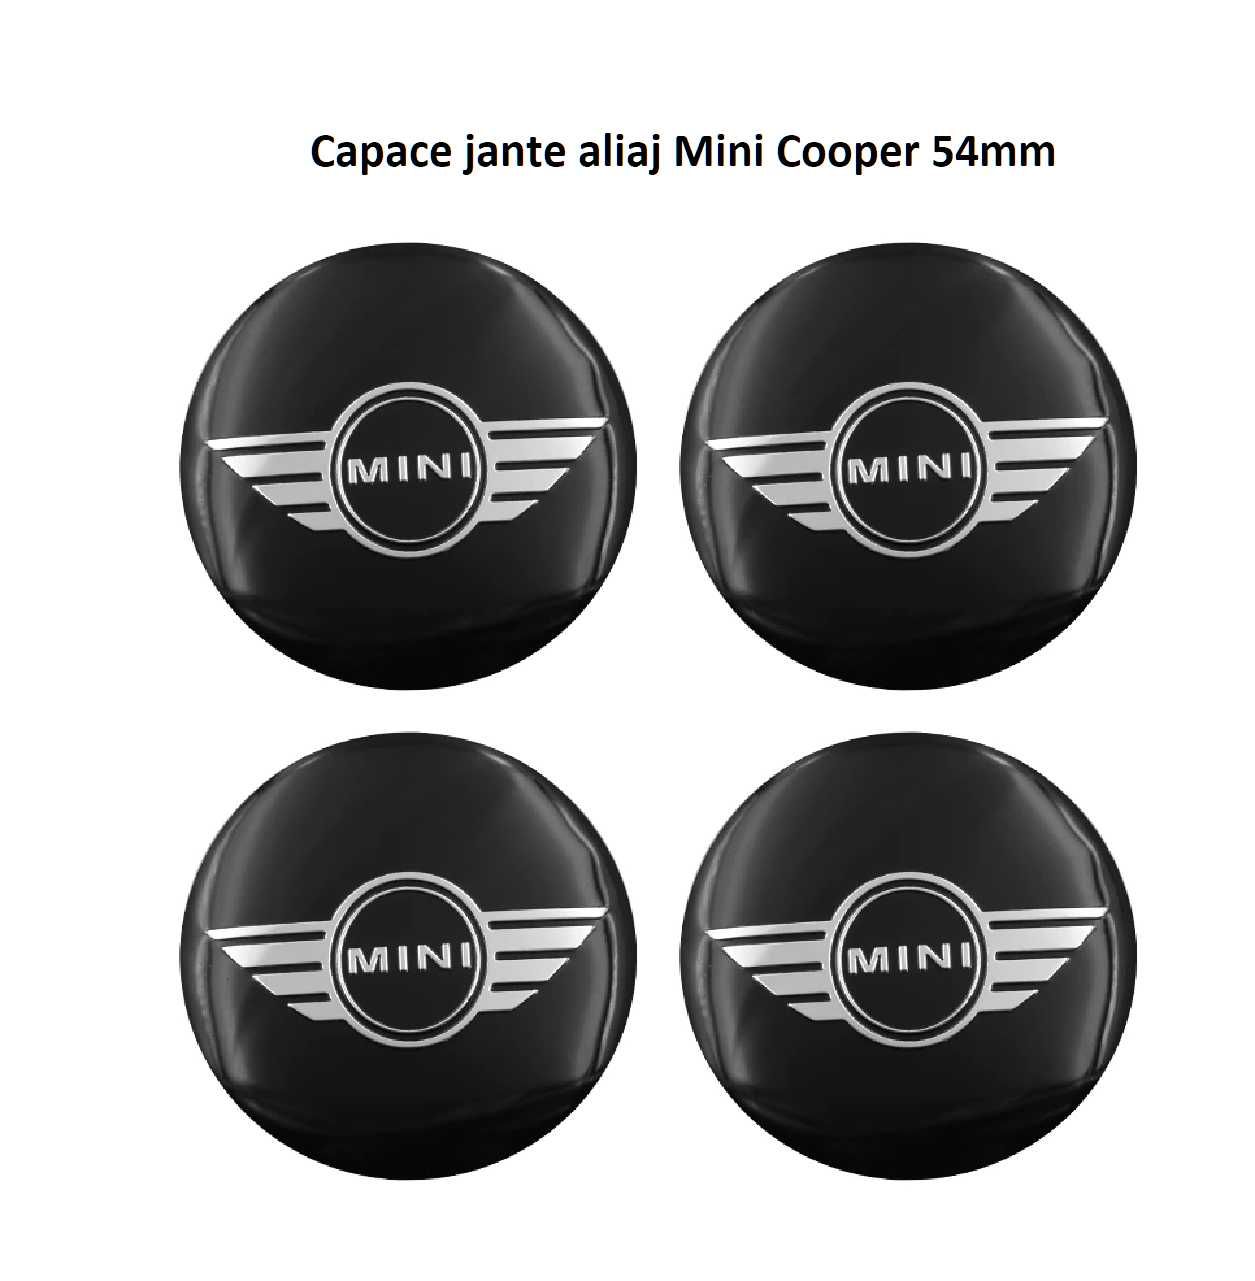 Capace jante aliaj Mini Cooper 54mm / 56mm